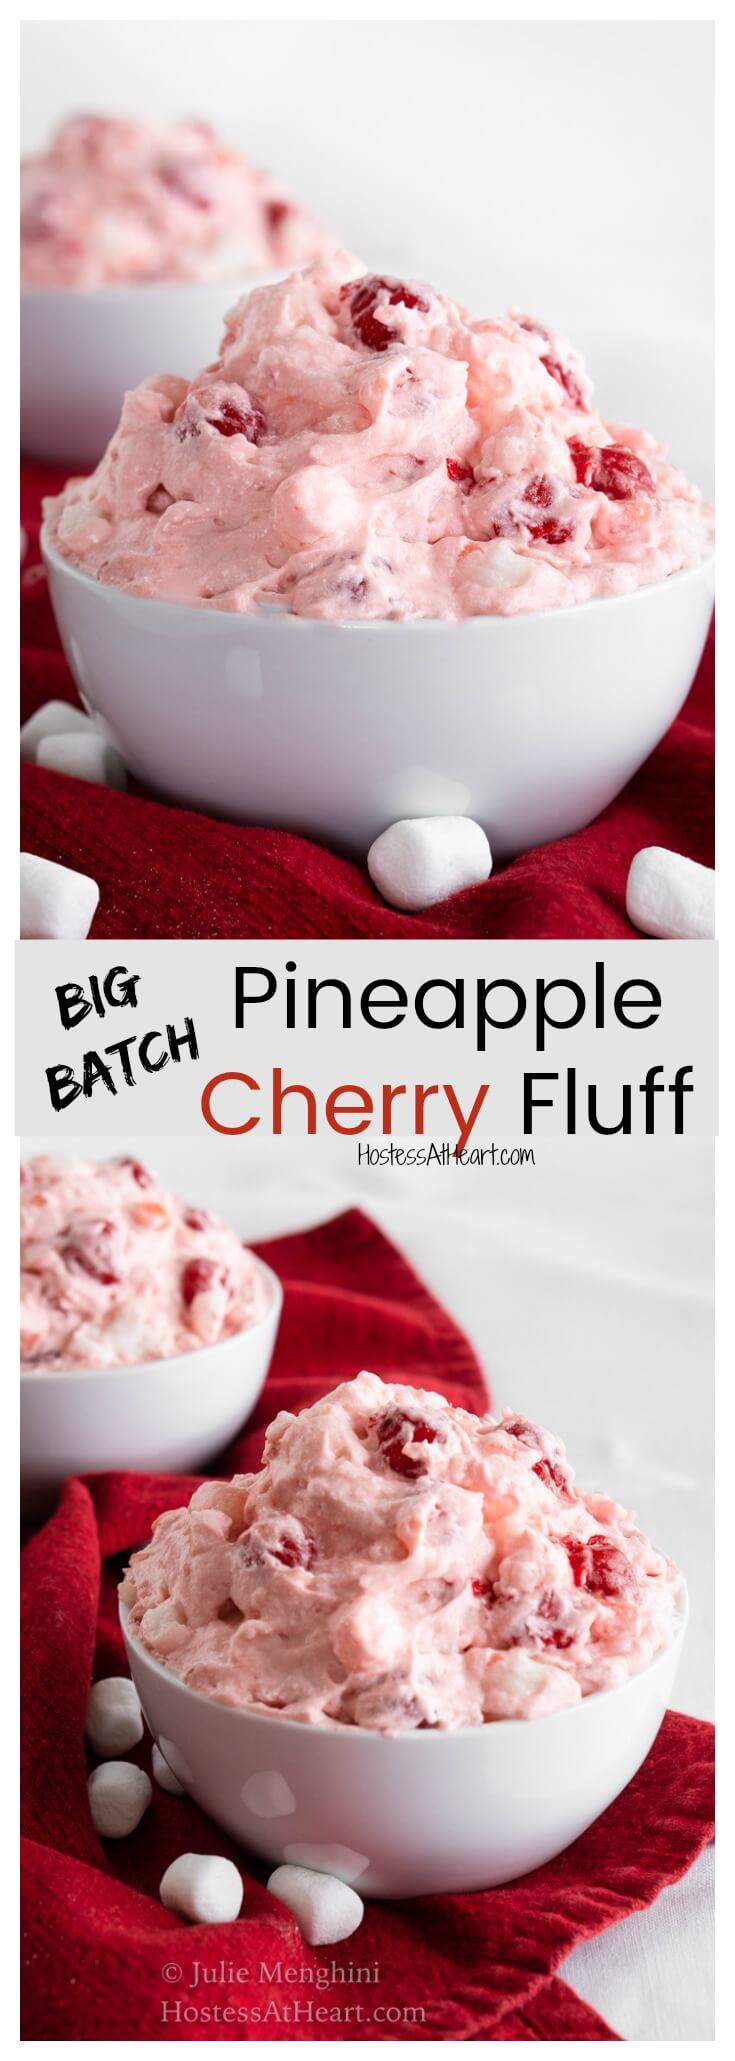 Big Batch Pineapple Cherry Fluff Recipe | Hostess At Heart